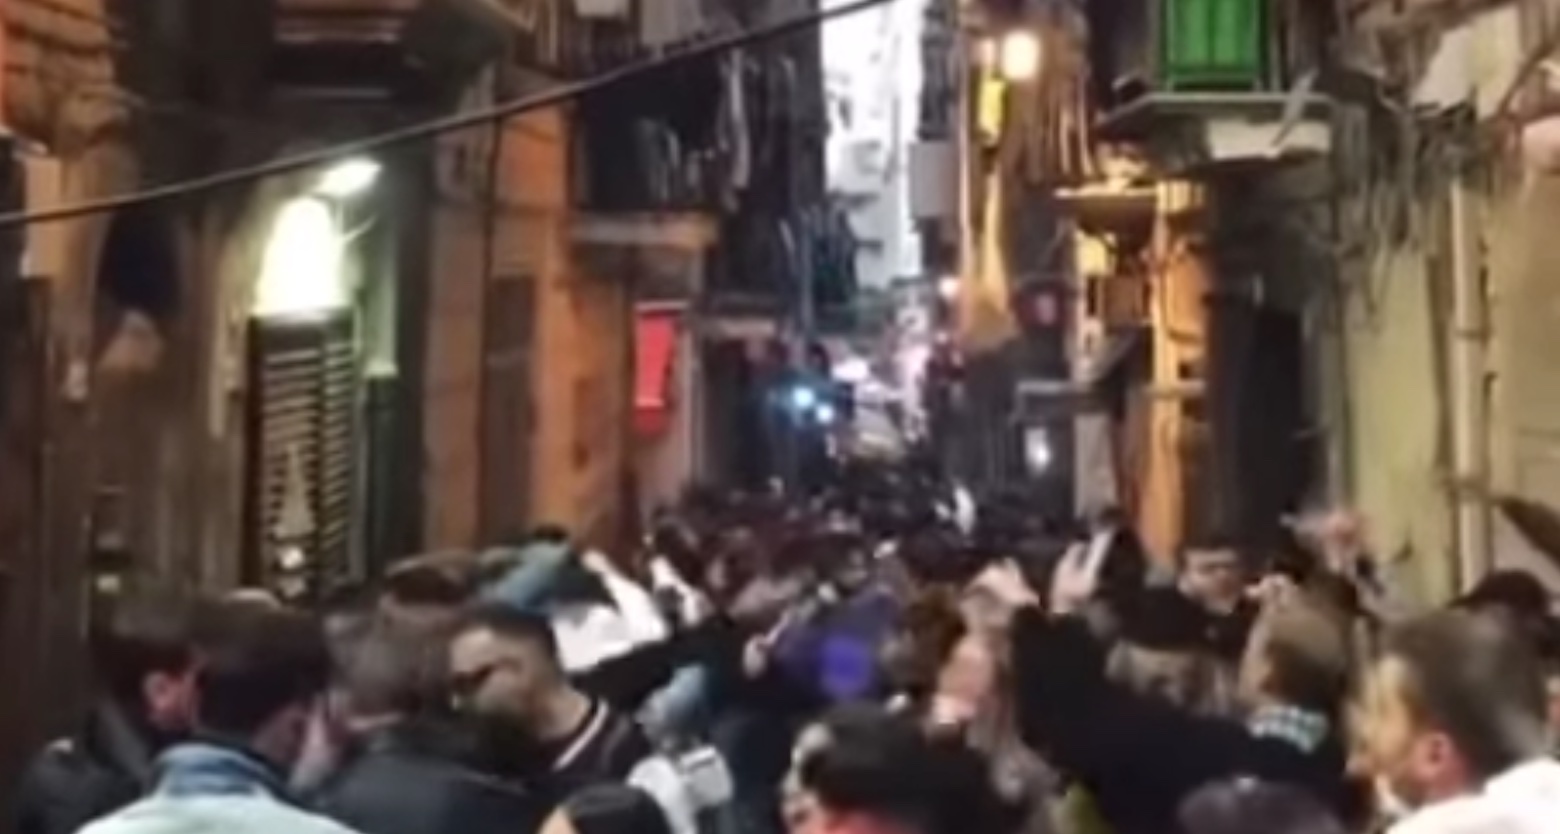 Napoli, giovani in strada ballando e cantano senza mascherine. IL VIDEO CHOC